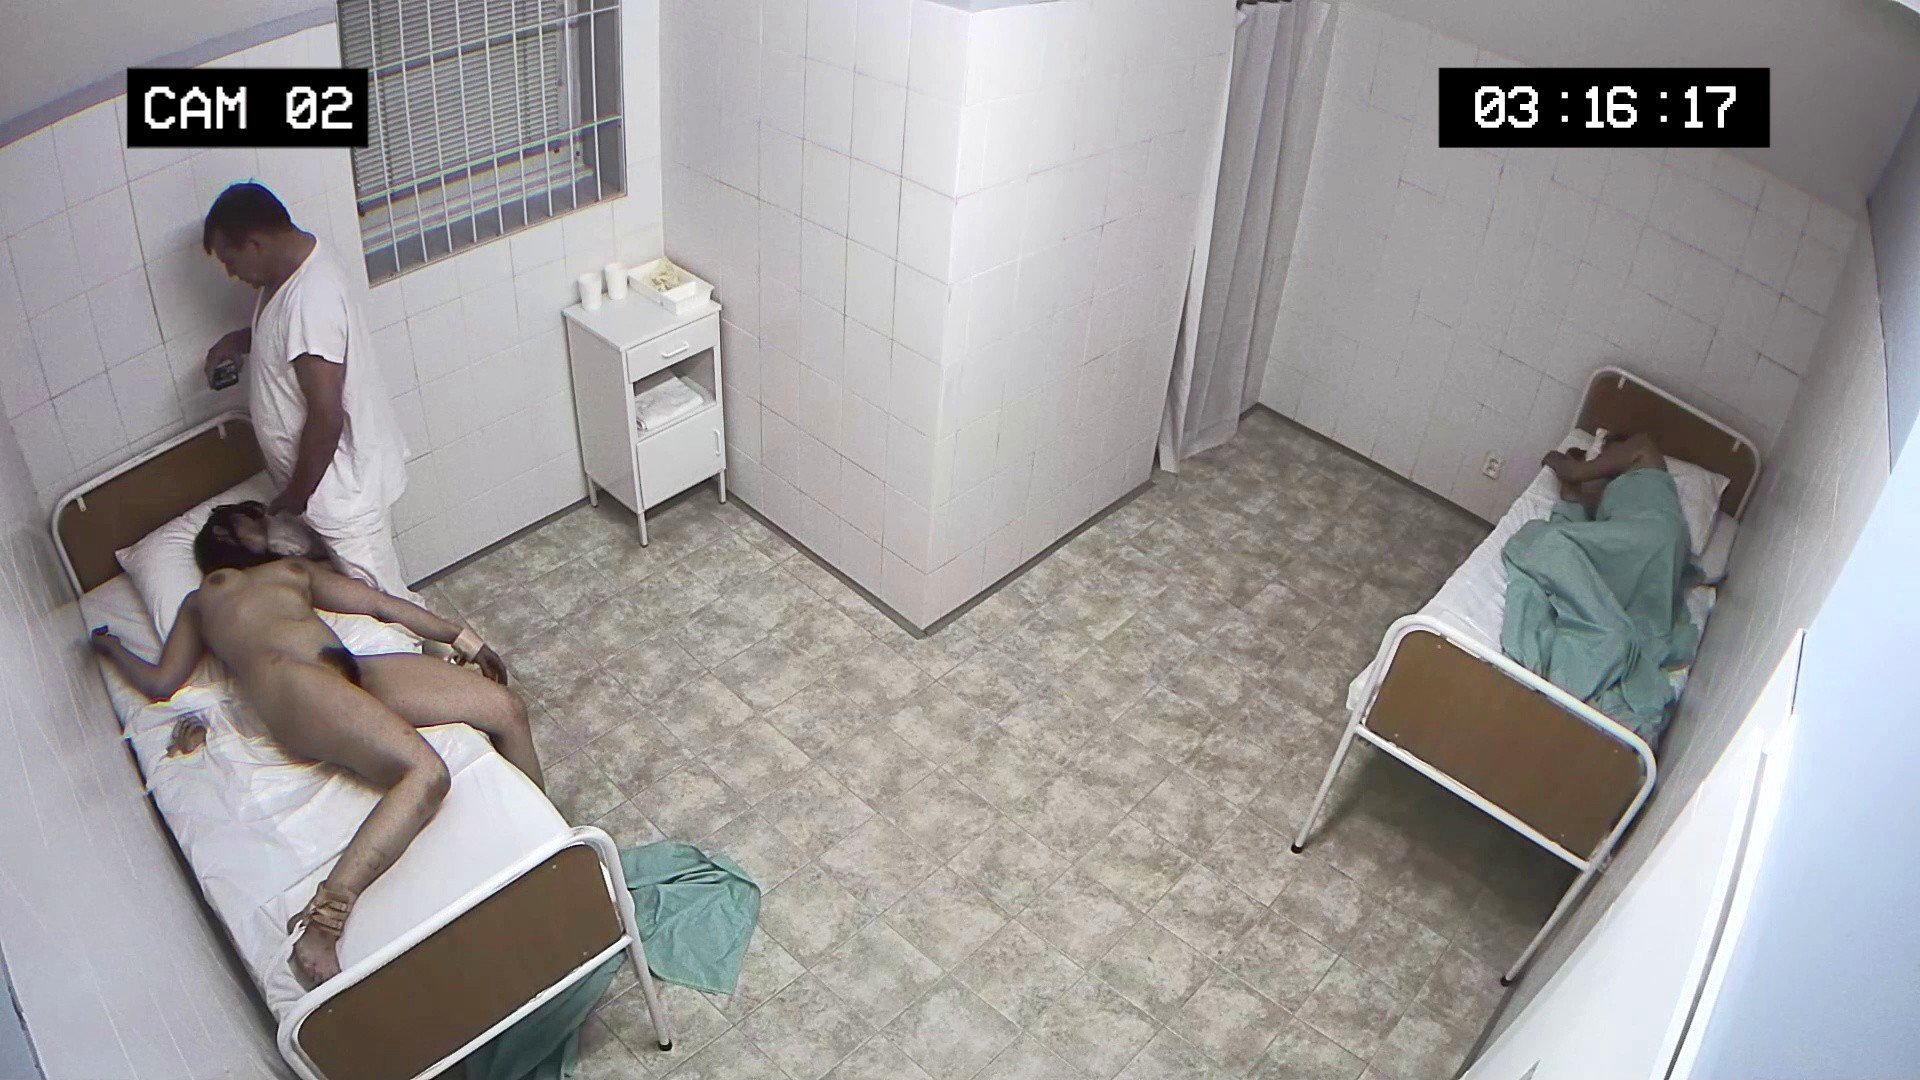 Порно в больнице скрытой камерой для стройной нимфоманки